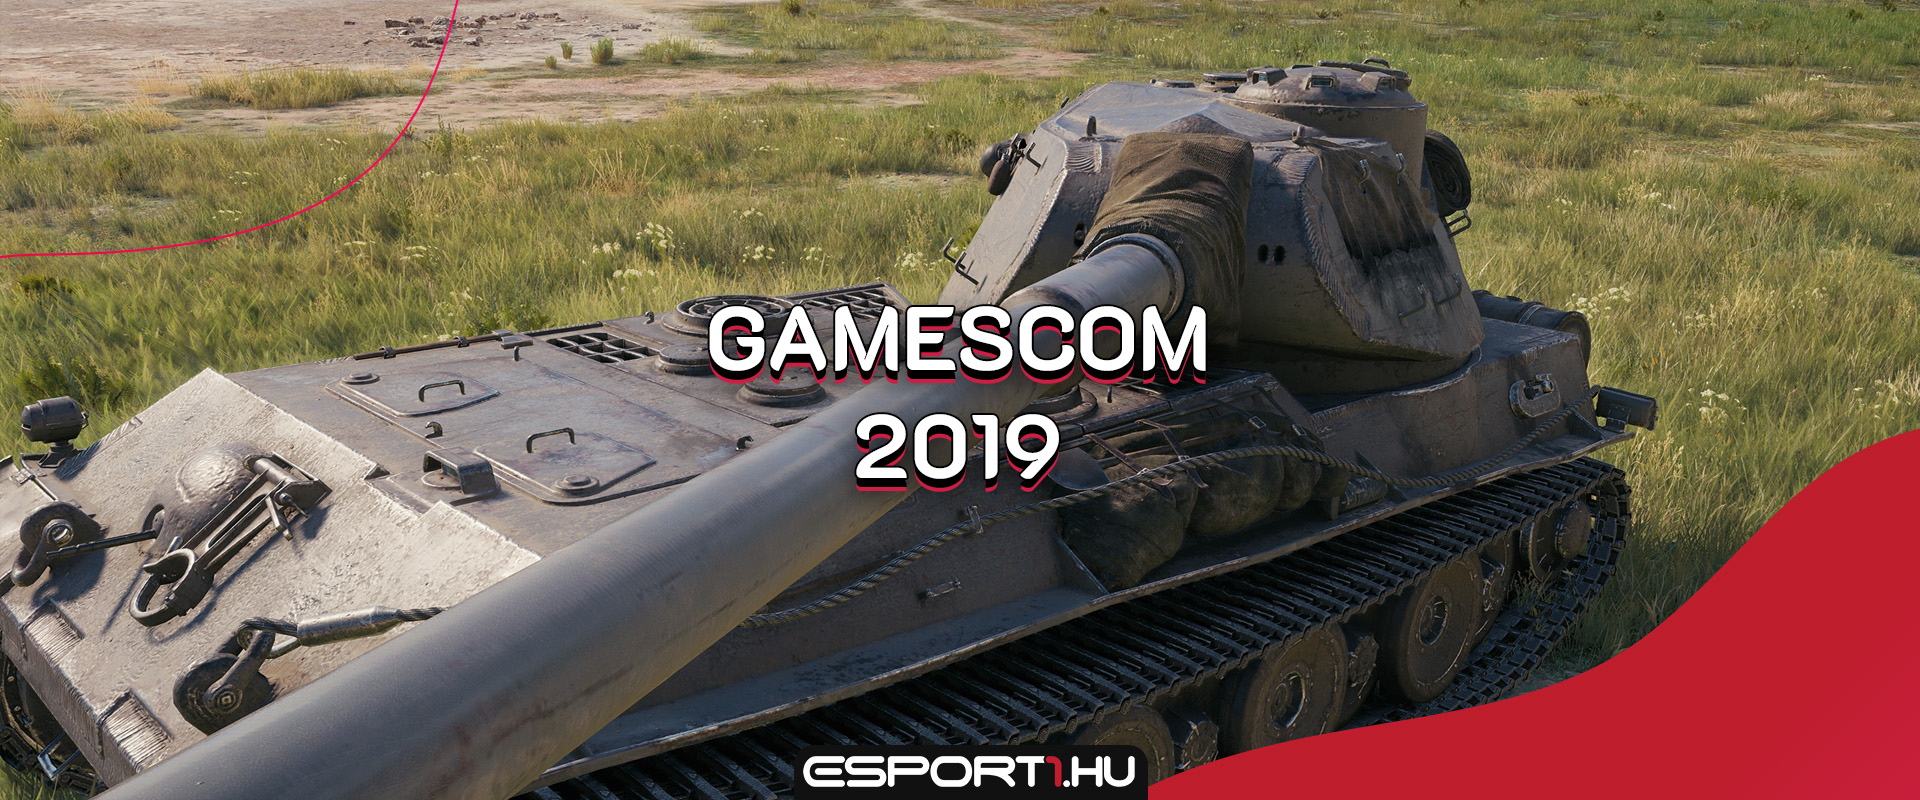 Belsős információk: A VK 75.01 (K) lehet a 2019-es Gamescom prémium tankja